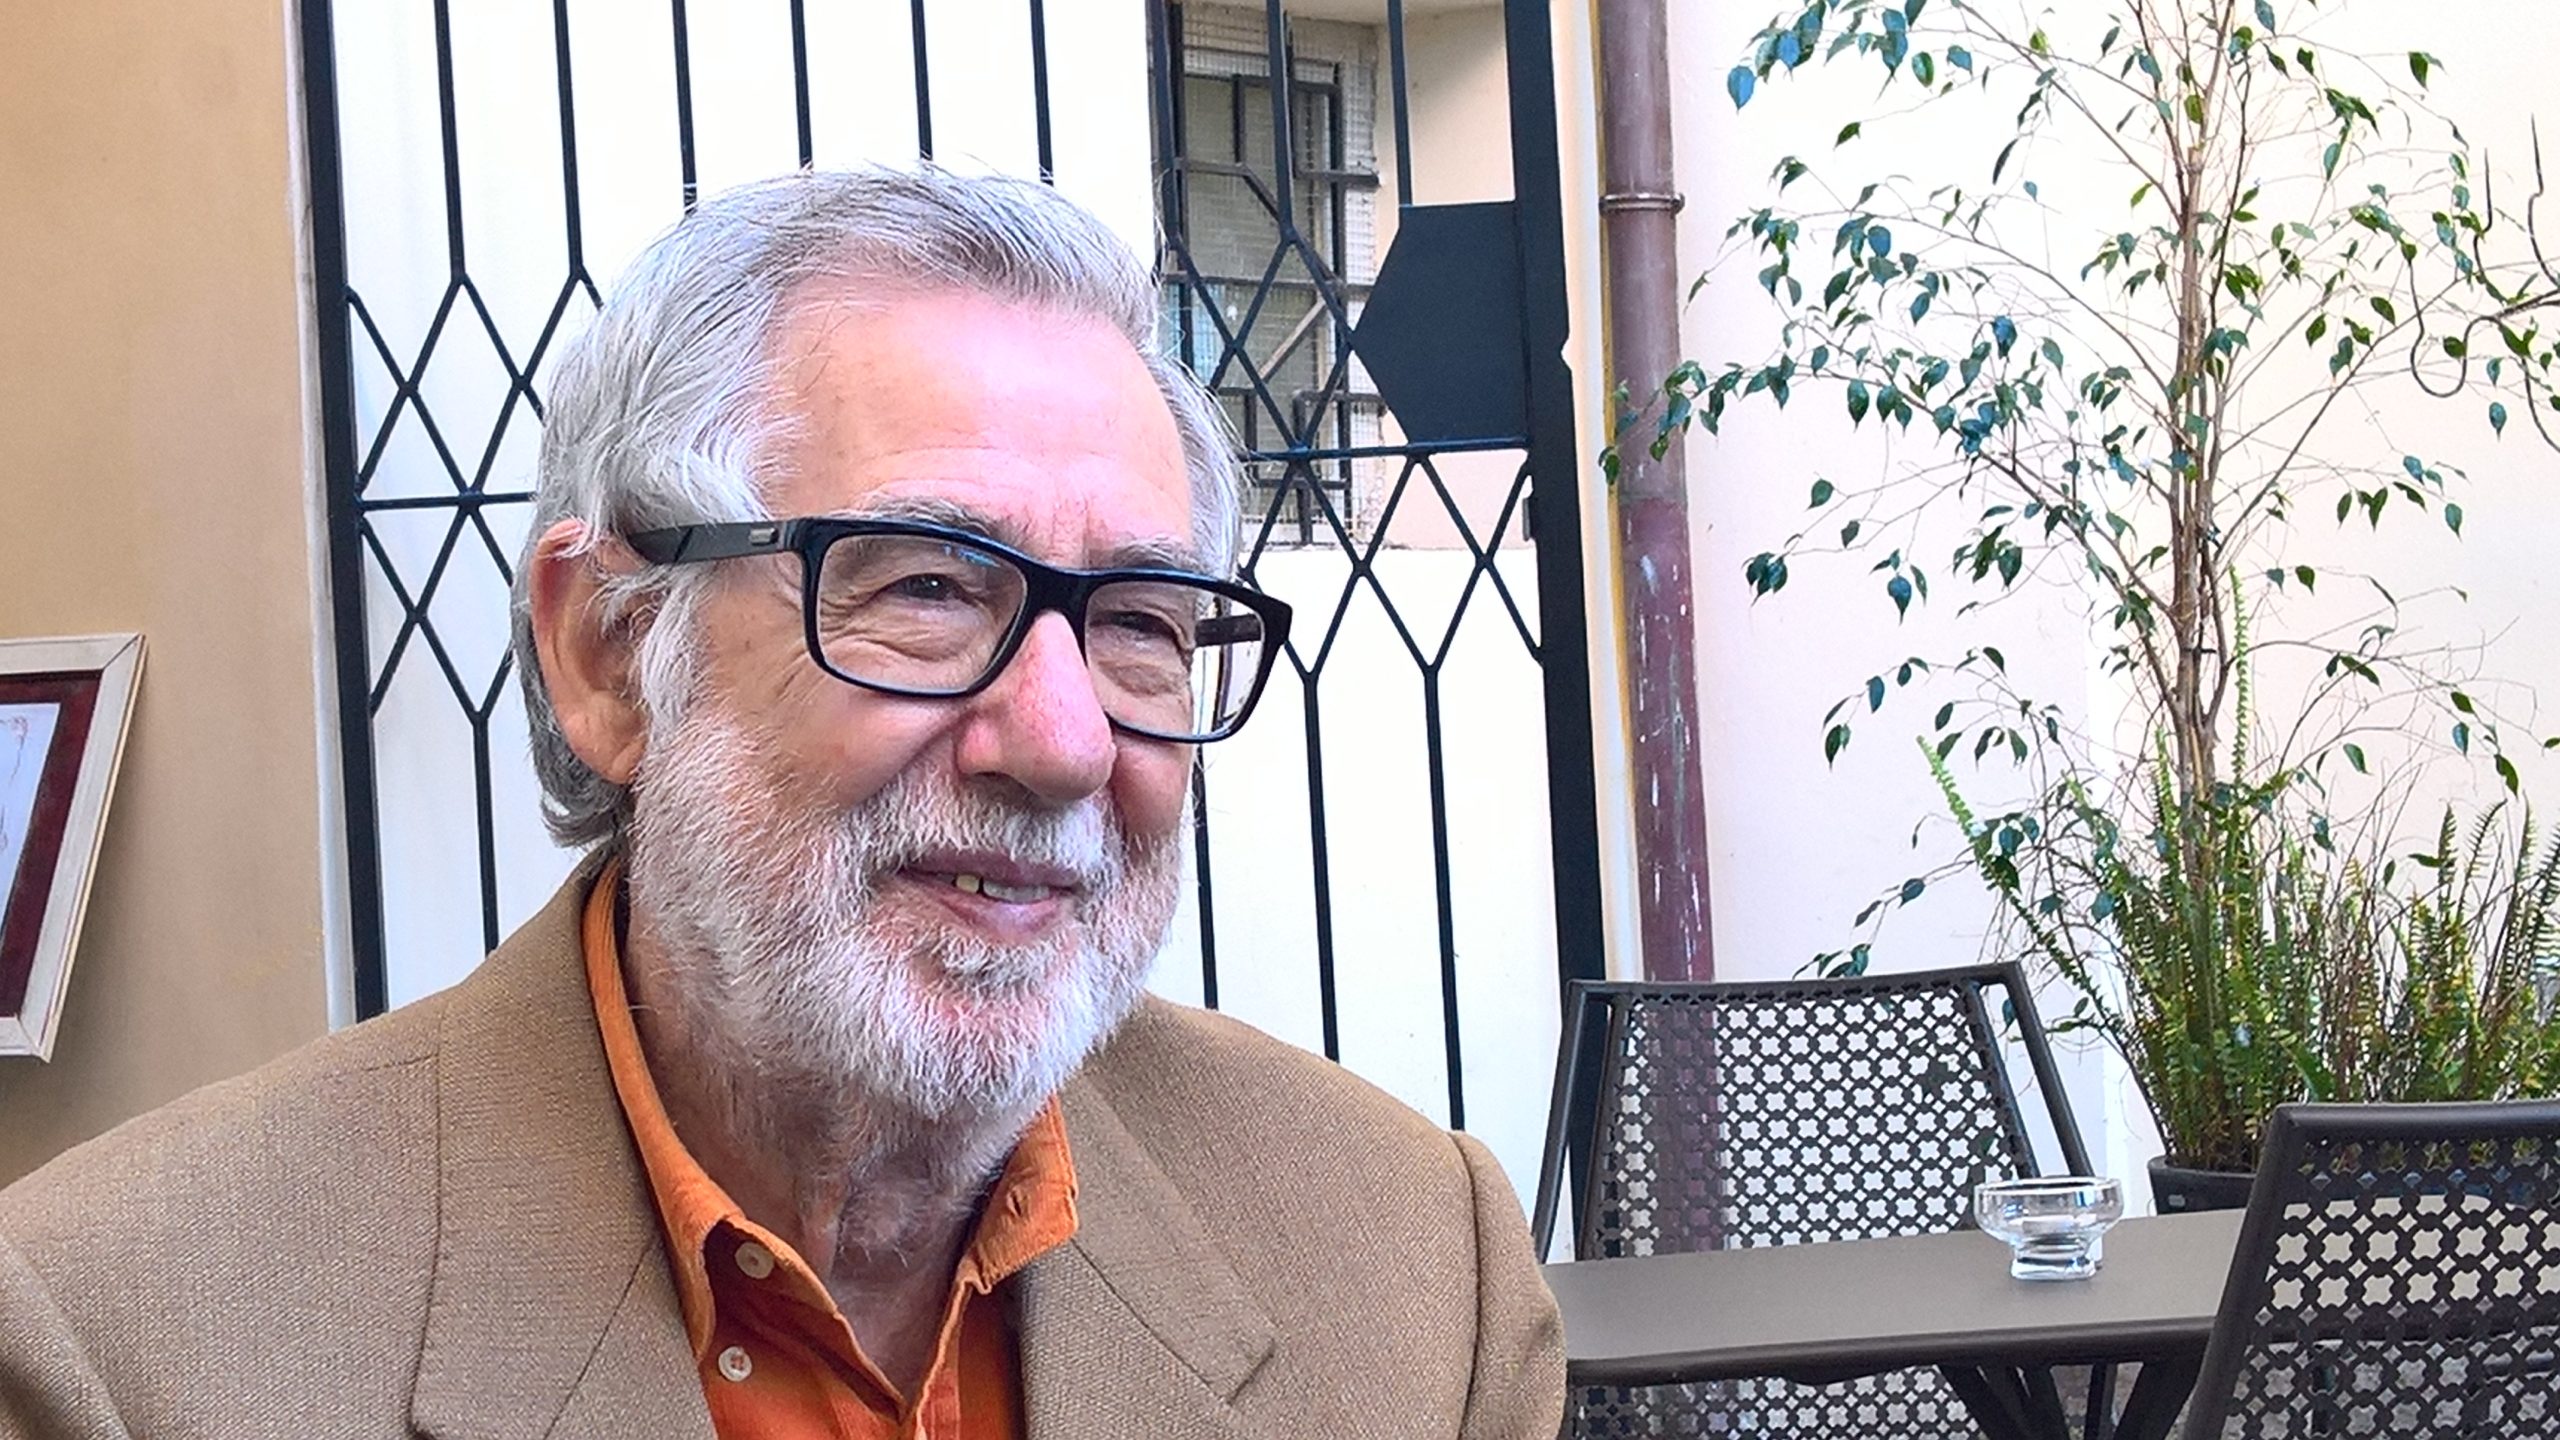 Intervista di Nando Cossu a Francesco Cabiddu vecchio contadino di Ortueri